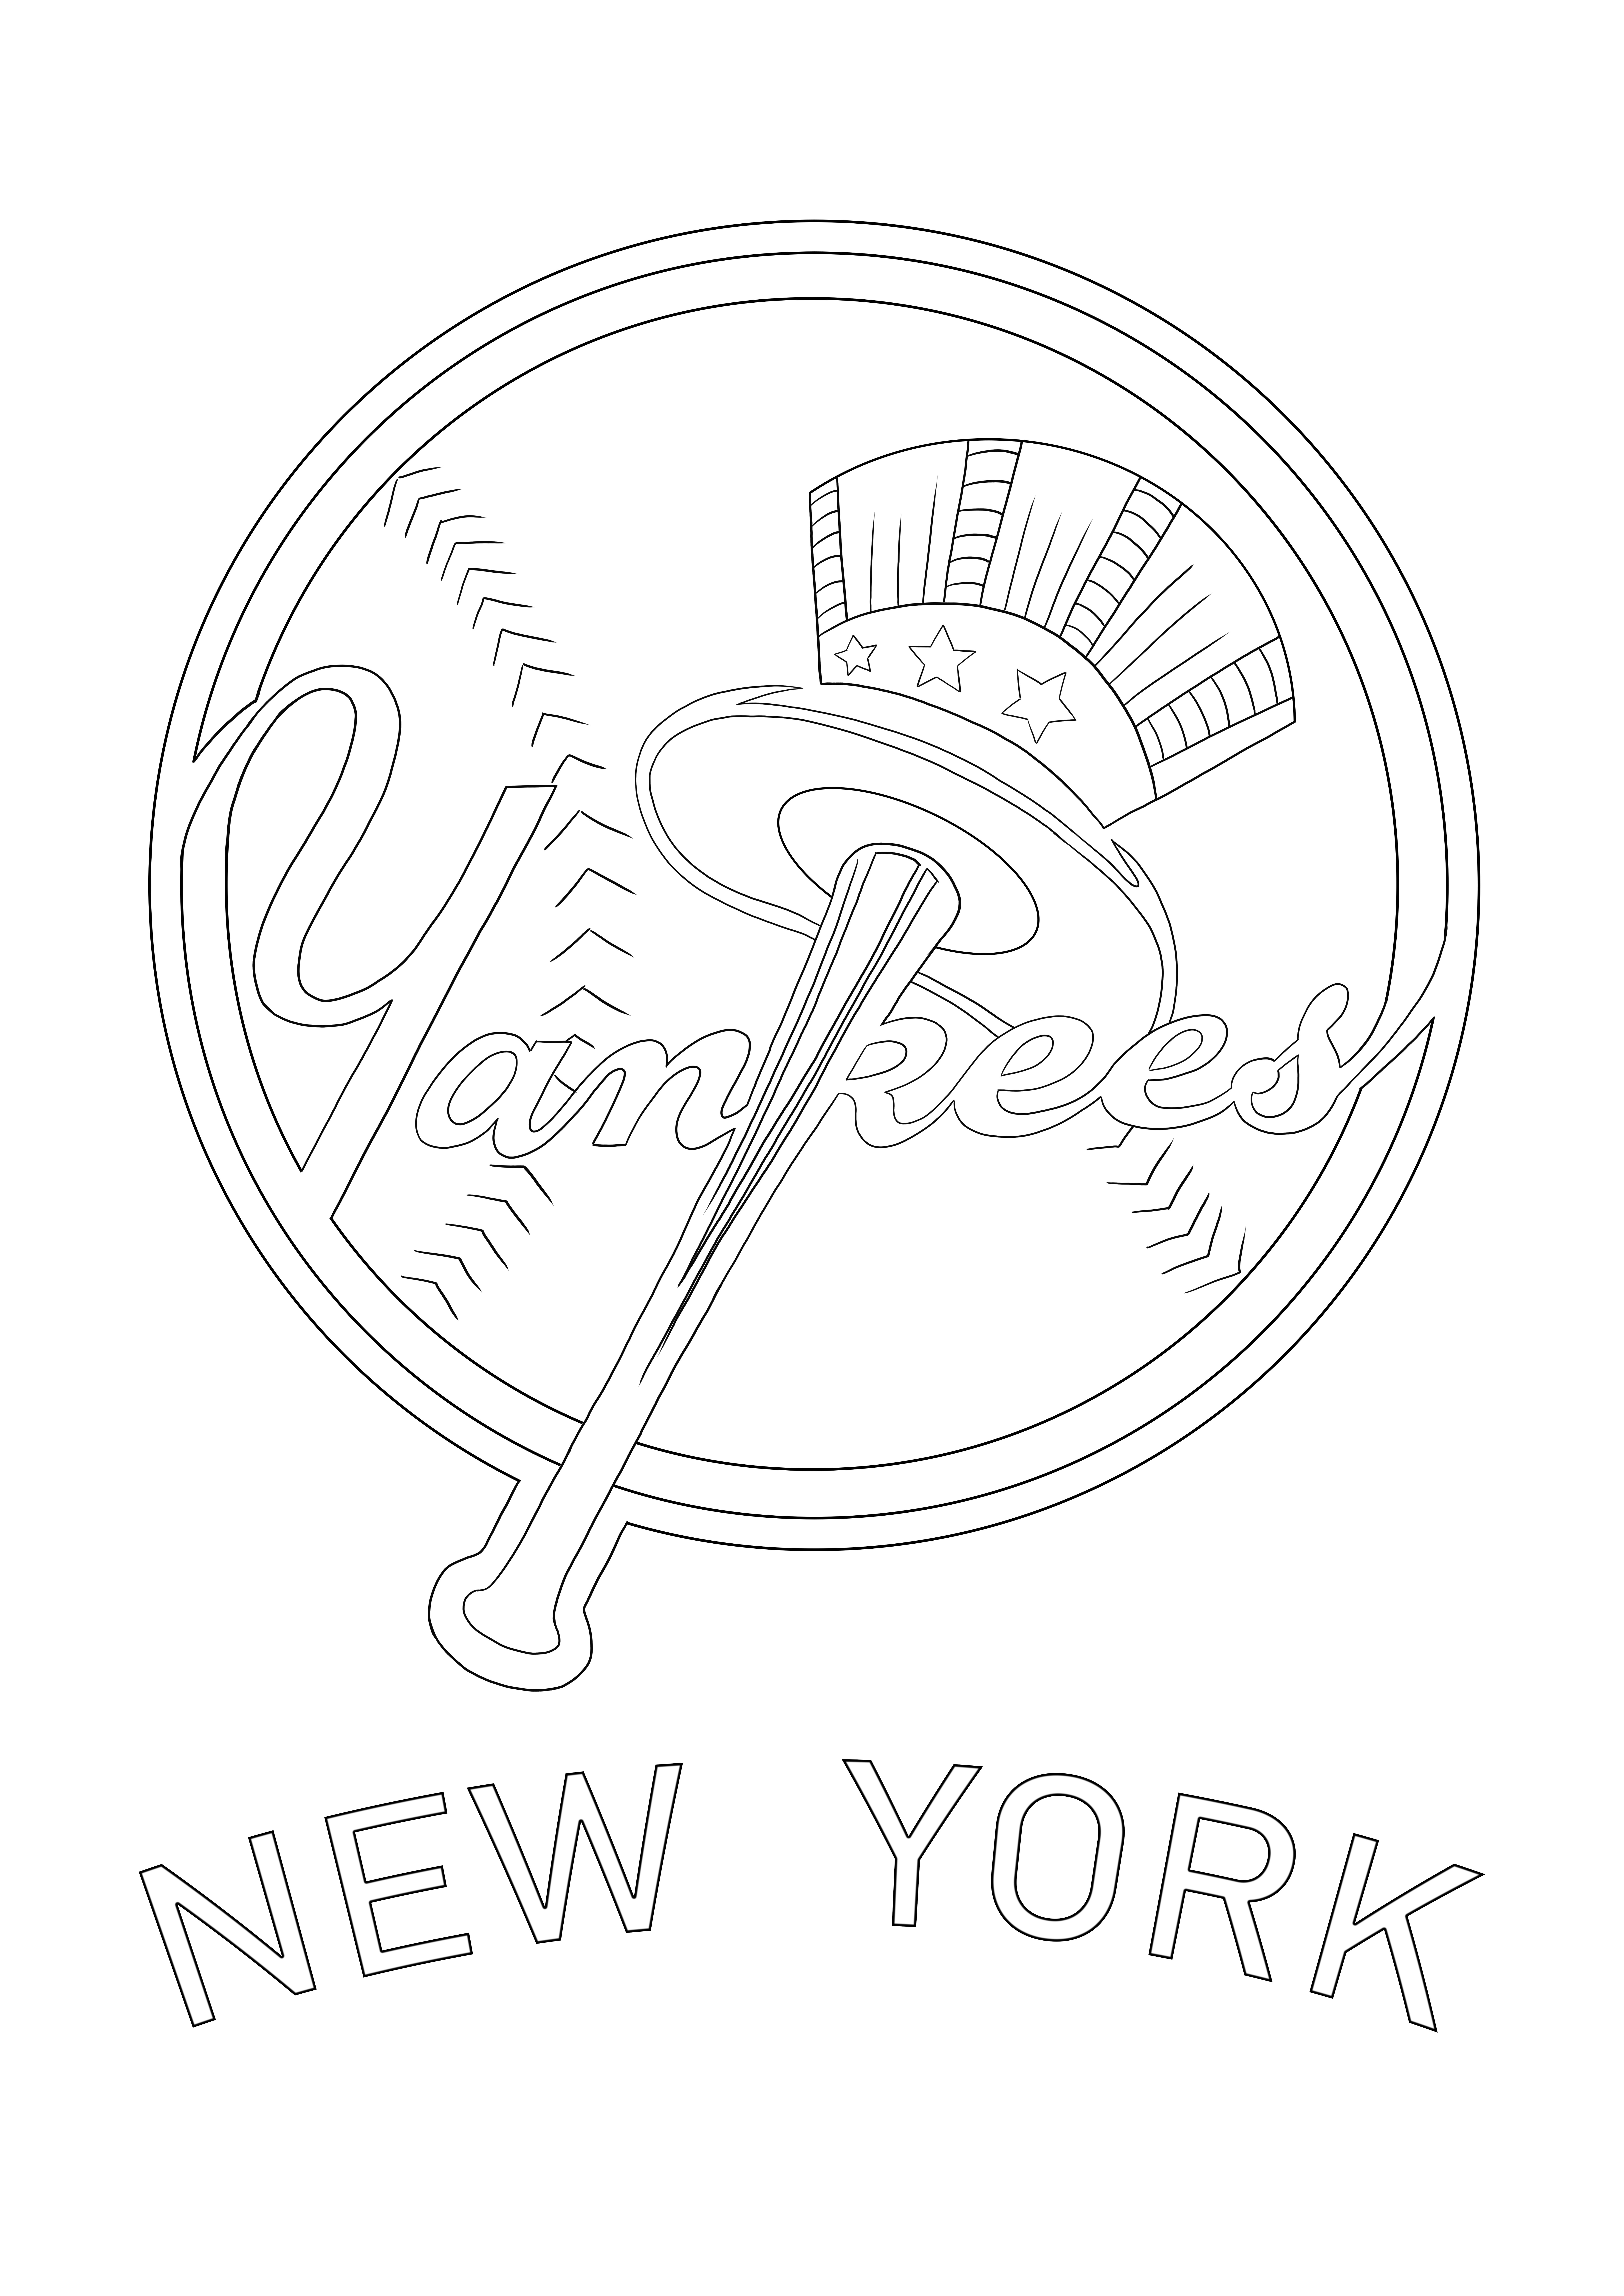 New York Yankees-logo gratis te downloaden of op te slaan voor latere kleurafbeelding